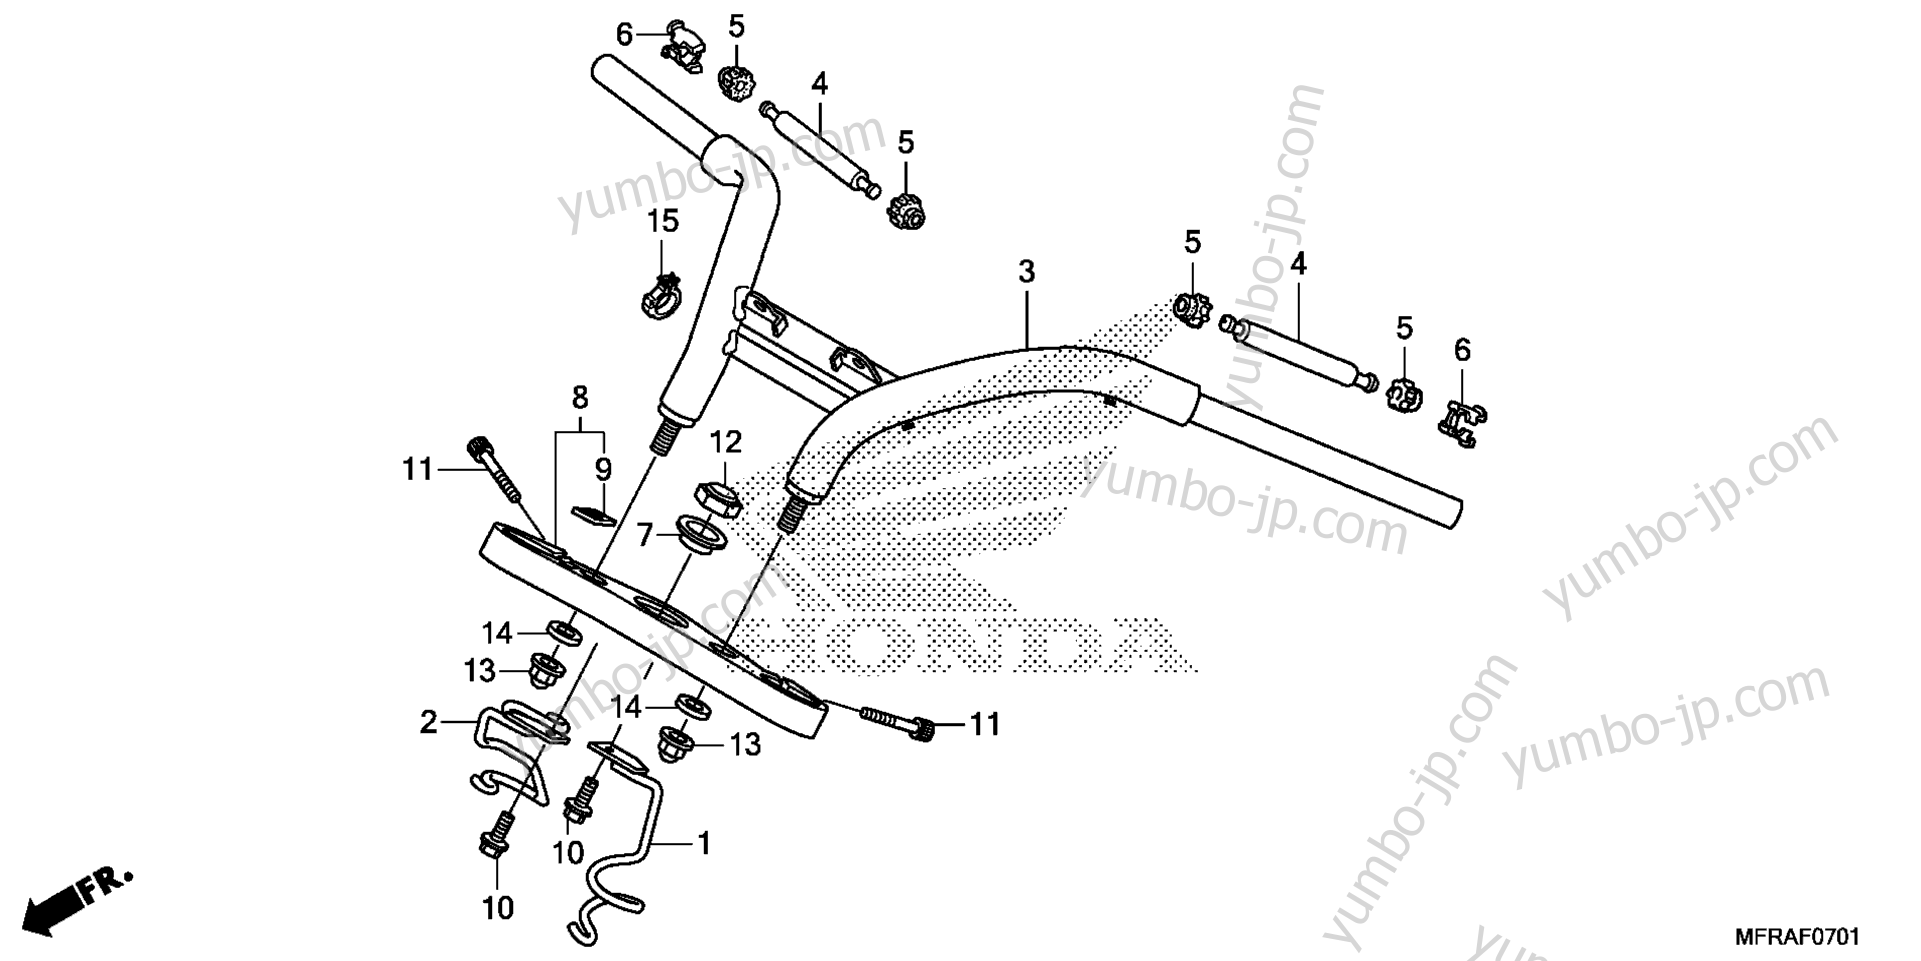 HANDLEBAR / TOP BRIDGE (2) for motorcycles HONDA VT1300CXA AC 2013 year